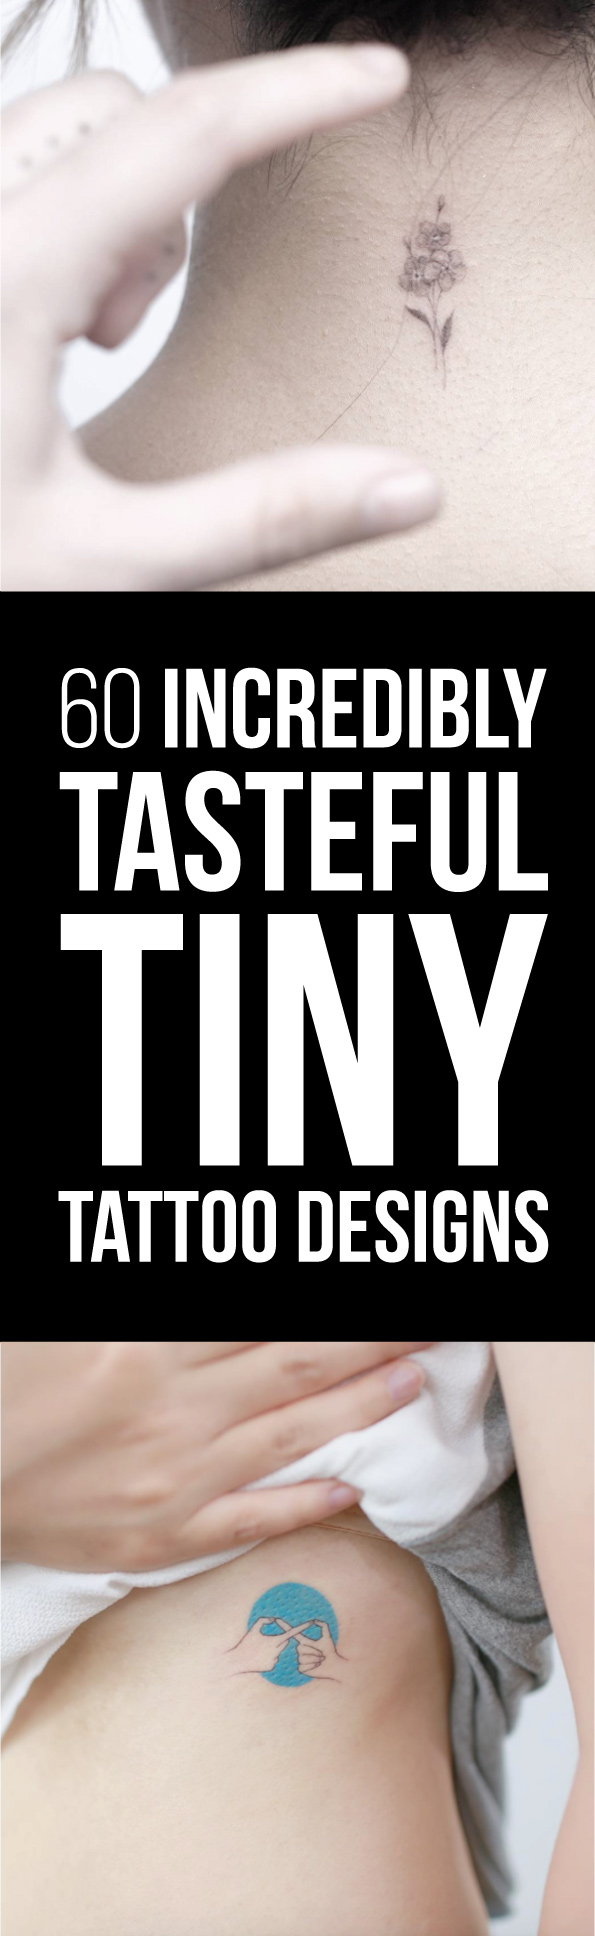 60 Incredibly Tasteful Tiny Tattoo Designs | TattooBlend